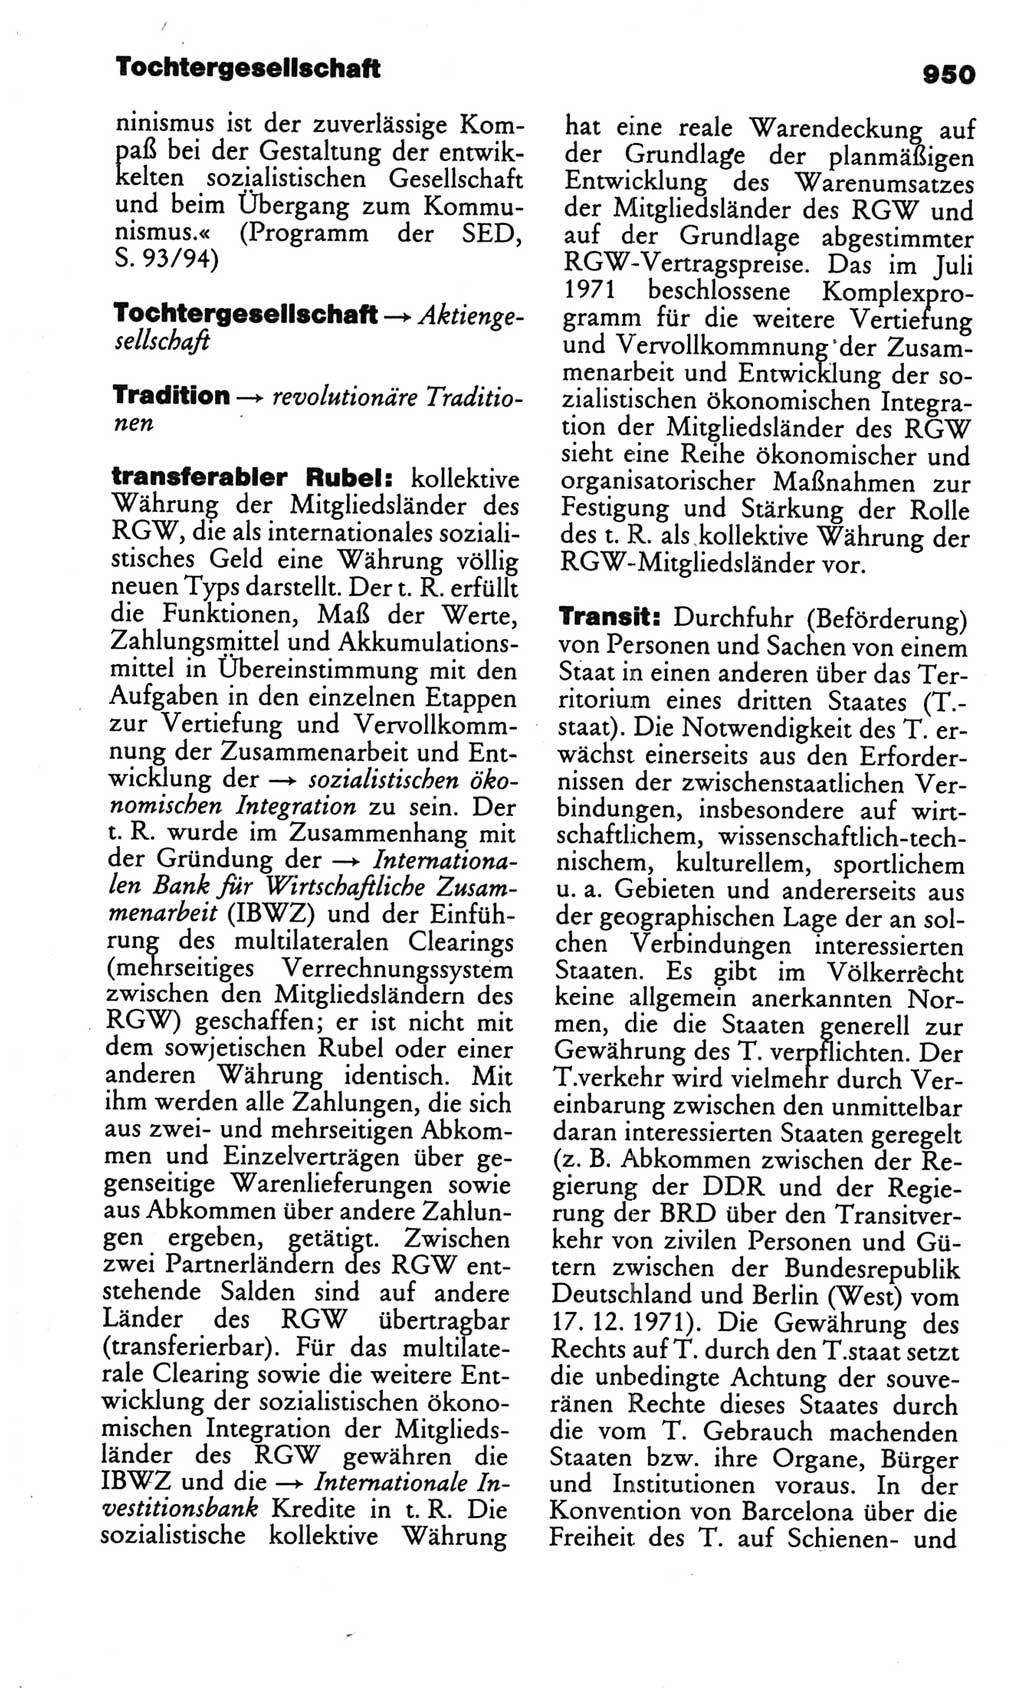 Kleines politisches Wörterbuch [Deutsche Demokratische Republik (DDR)] 1986, Seite 950 (Kl. pol. Wb. DDR 1986, S. 950)